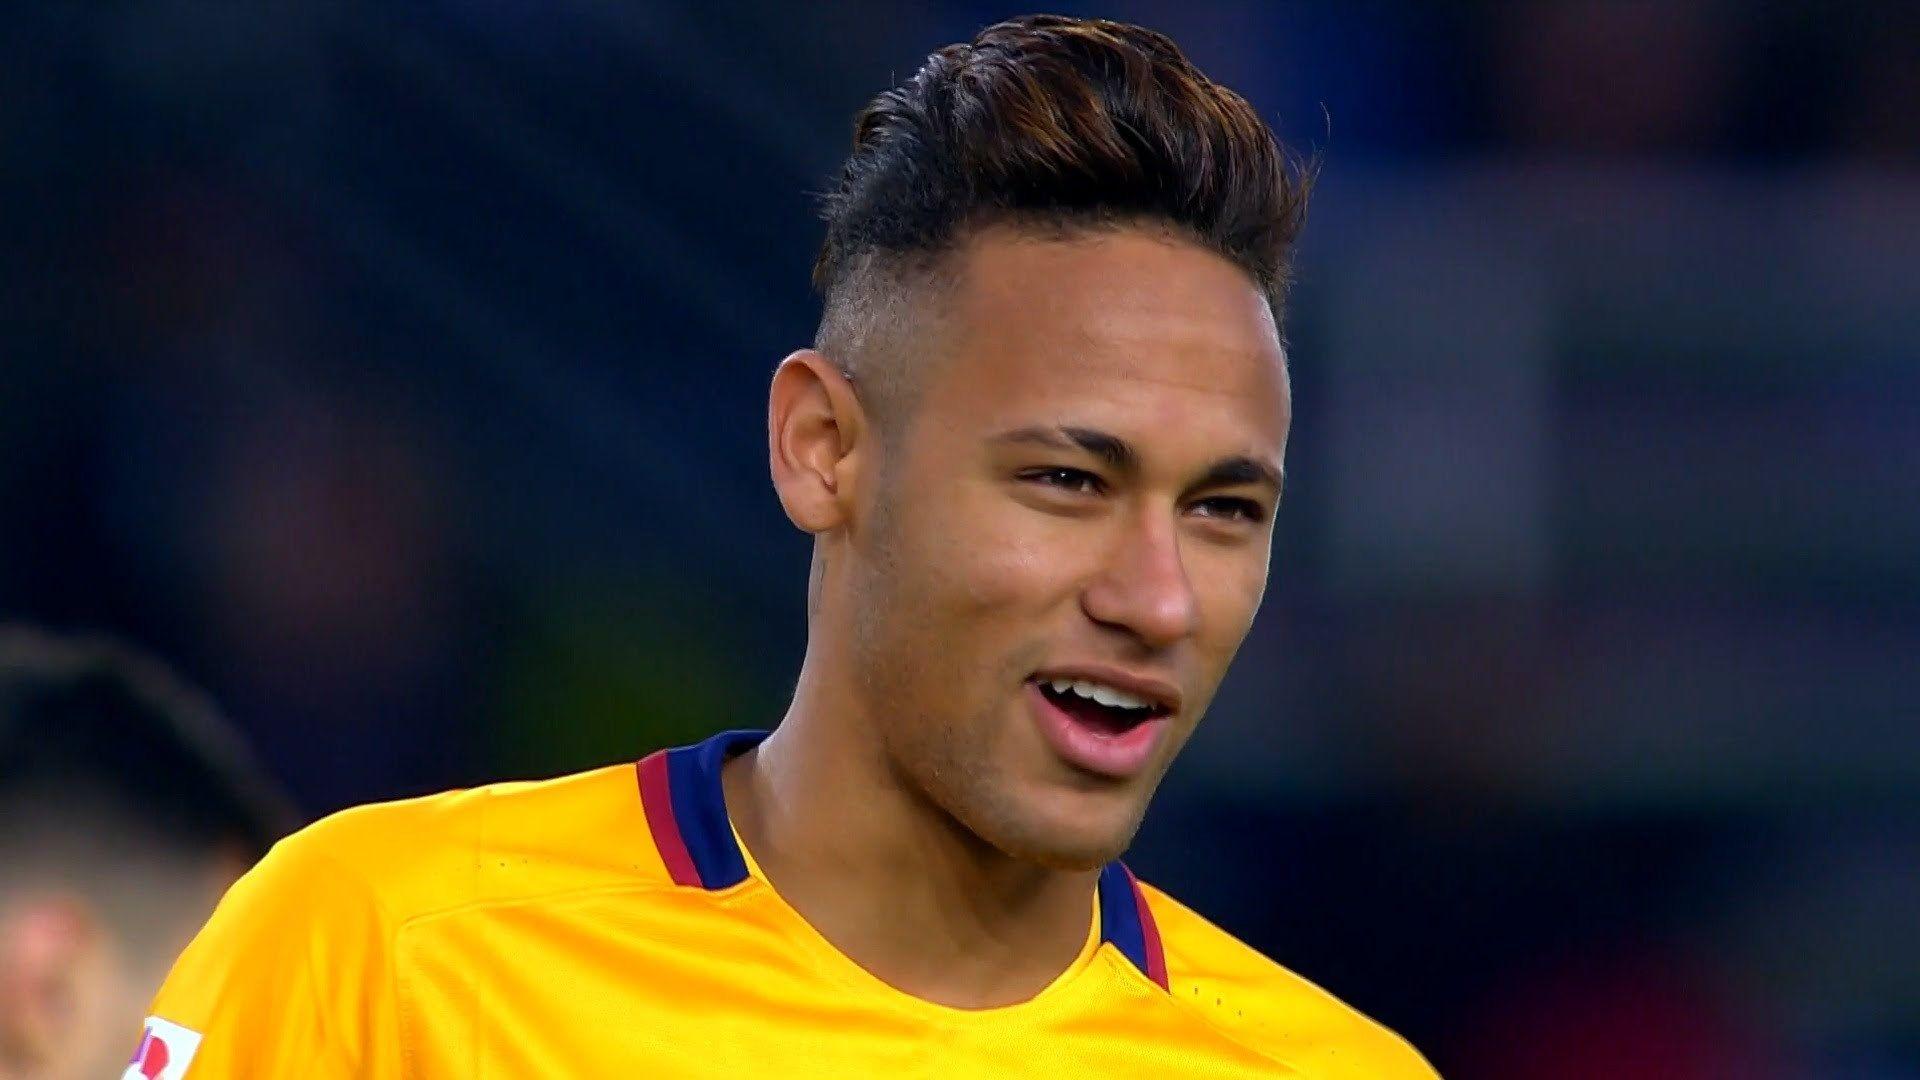 Neymar Hairstyle HD Desktop Image Sports Wallpaper: Neymar